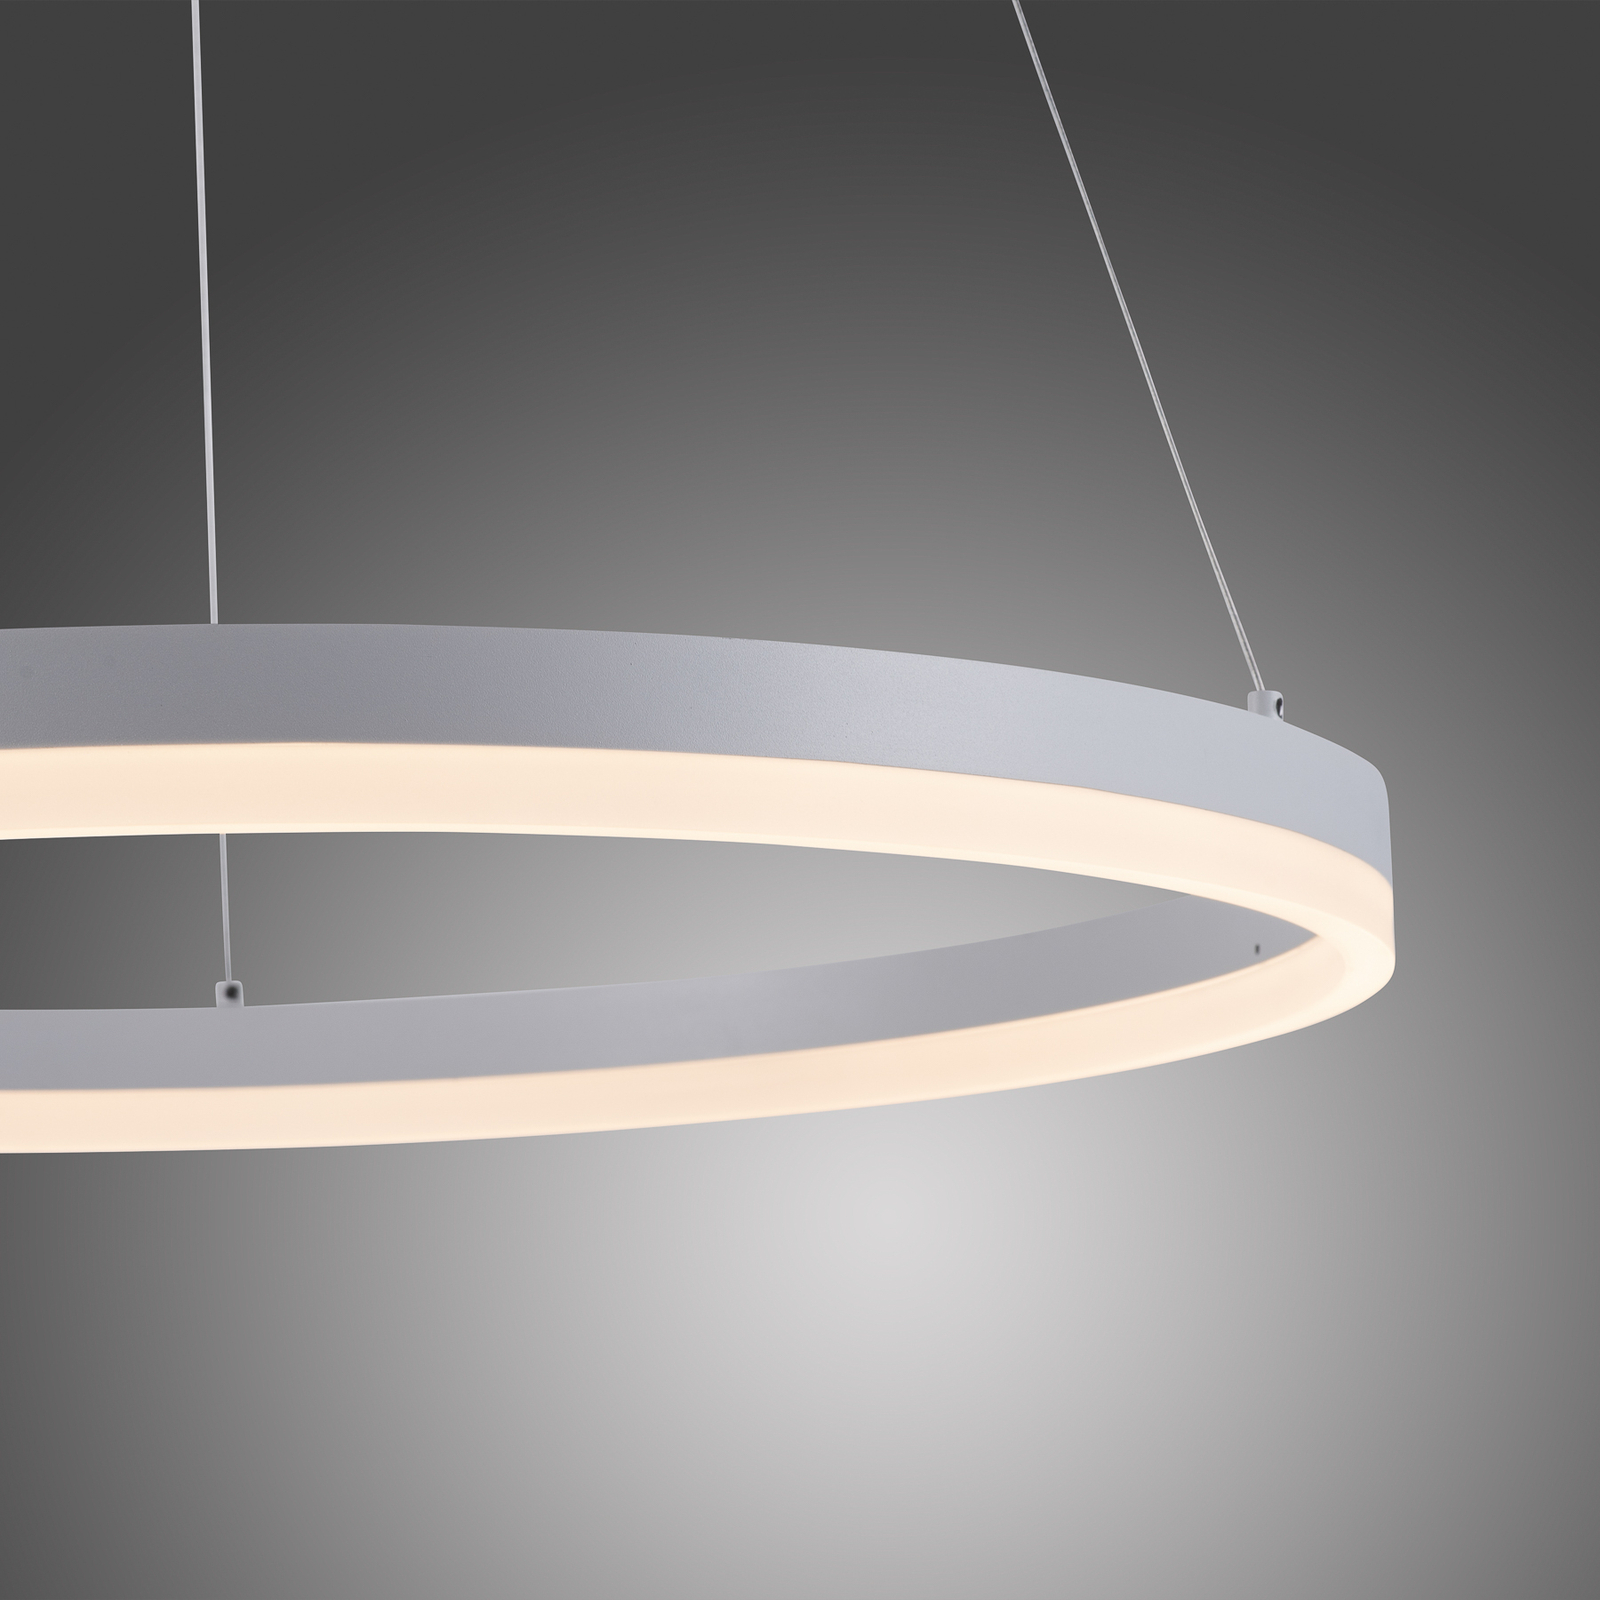 LED lógó világítás Titus, kerek, Ø 60 cm, fehér